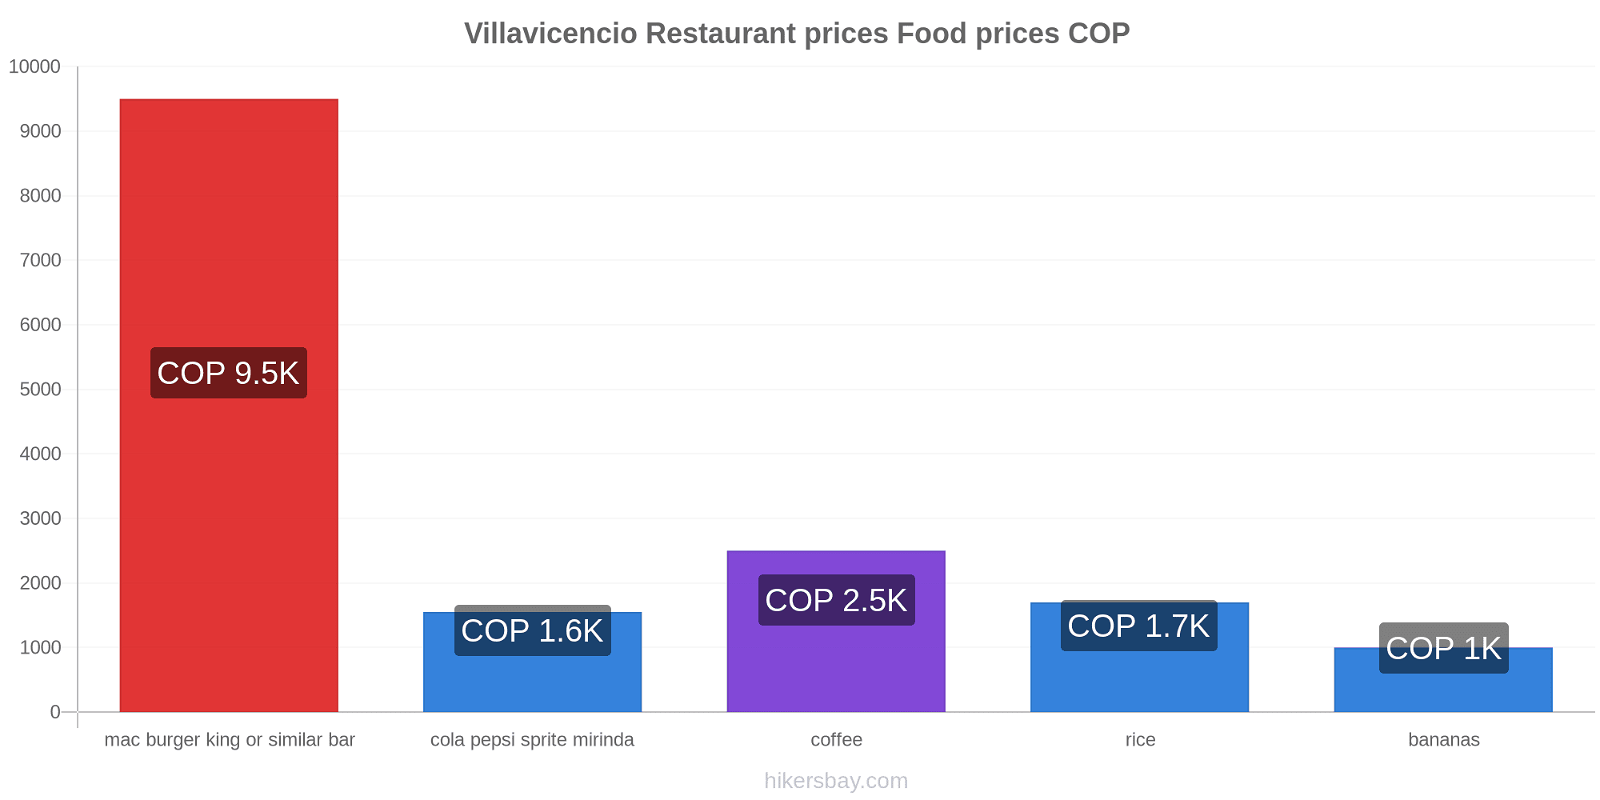 Villavicencio price changes hikersbay.com